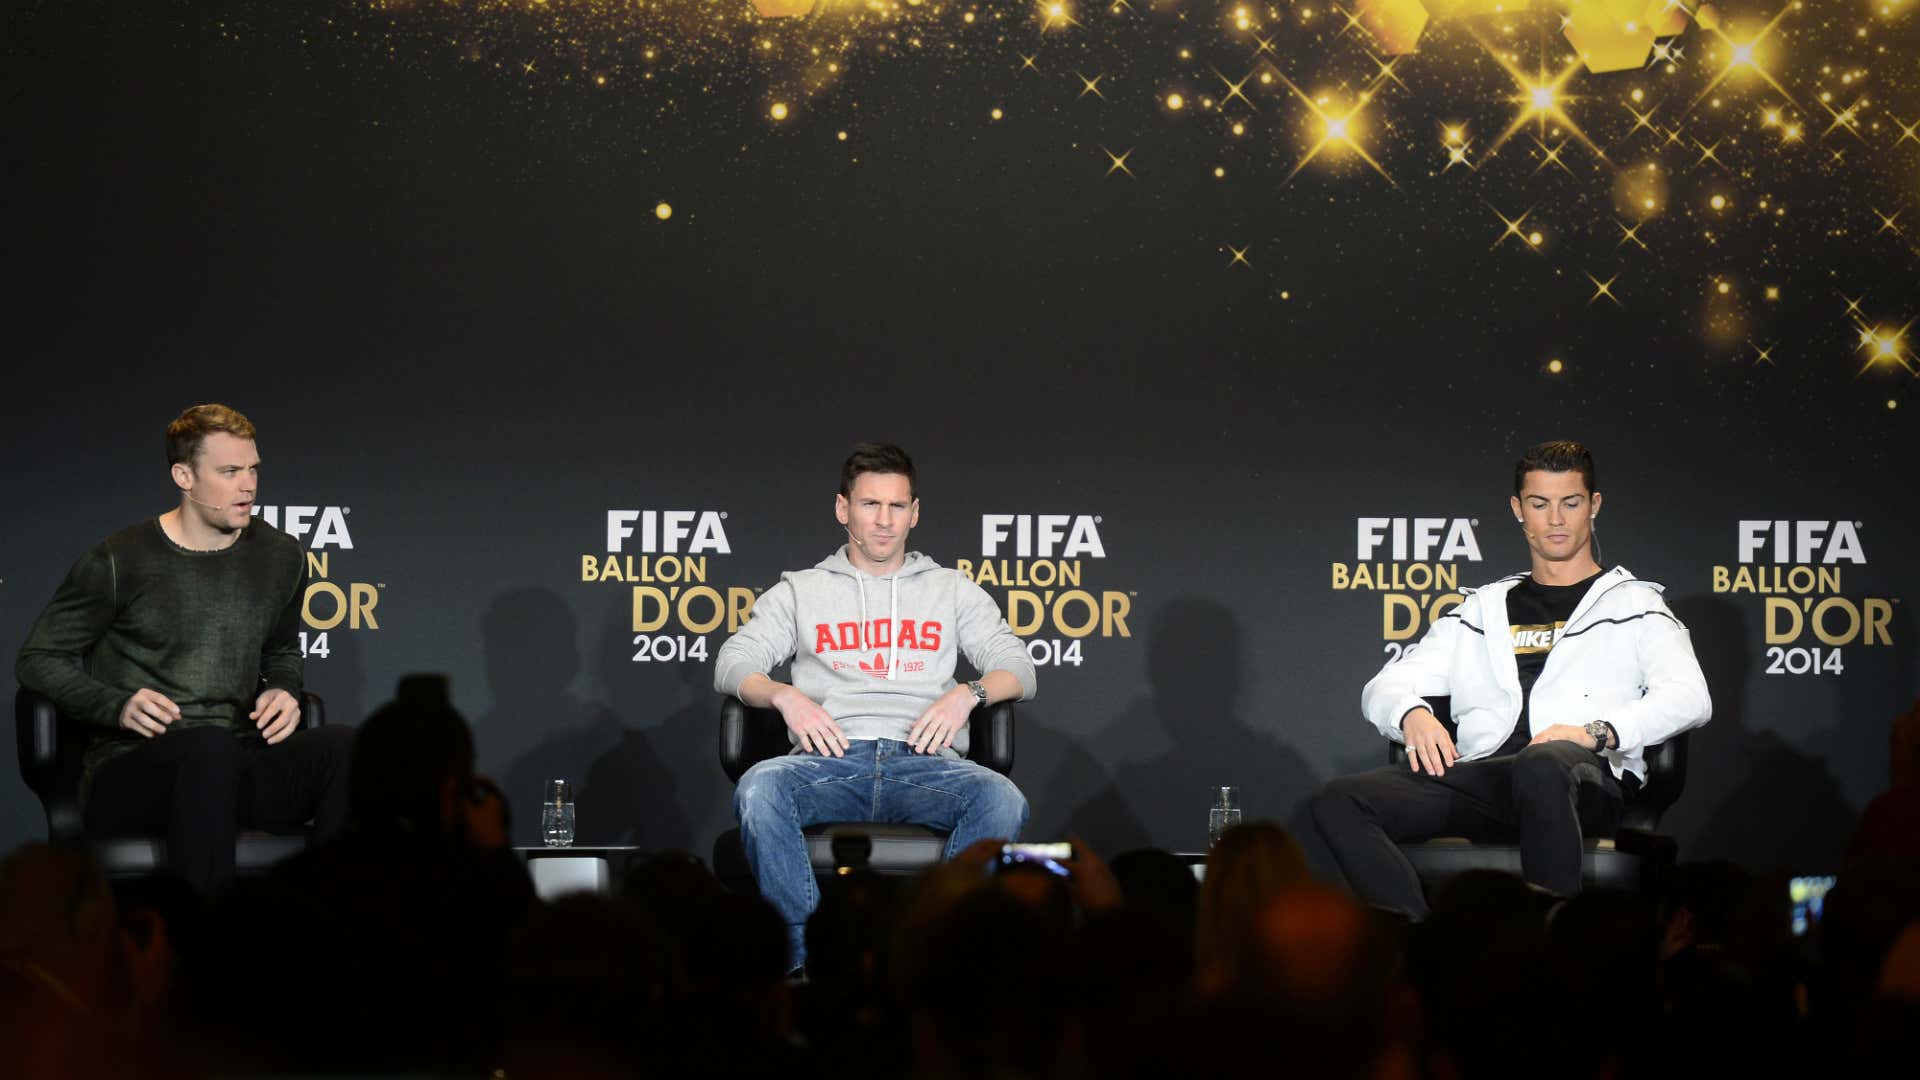 Neuer Messi Cristiano Ronaldo FIFA Ballon d'Or 2014